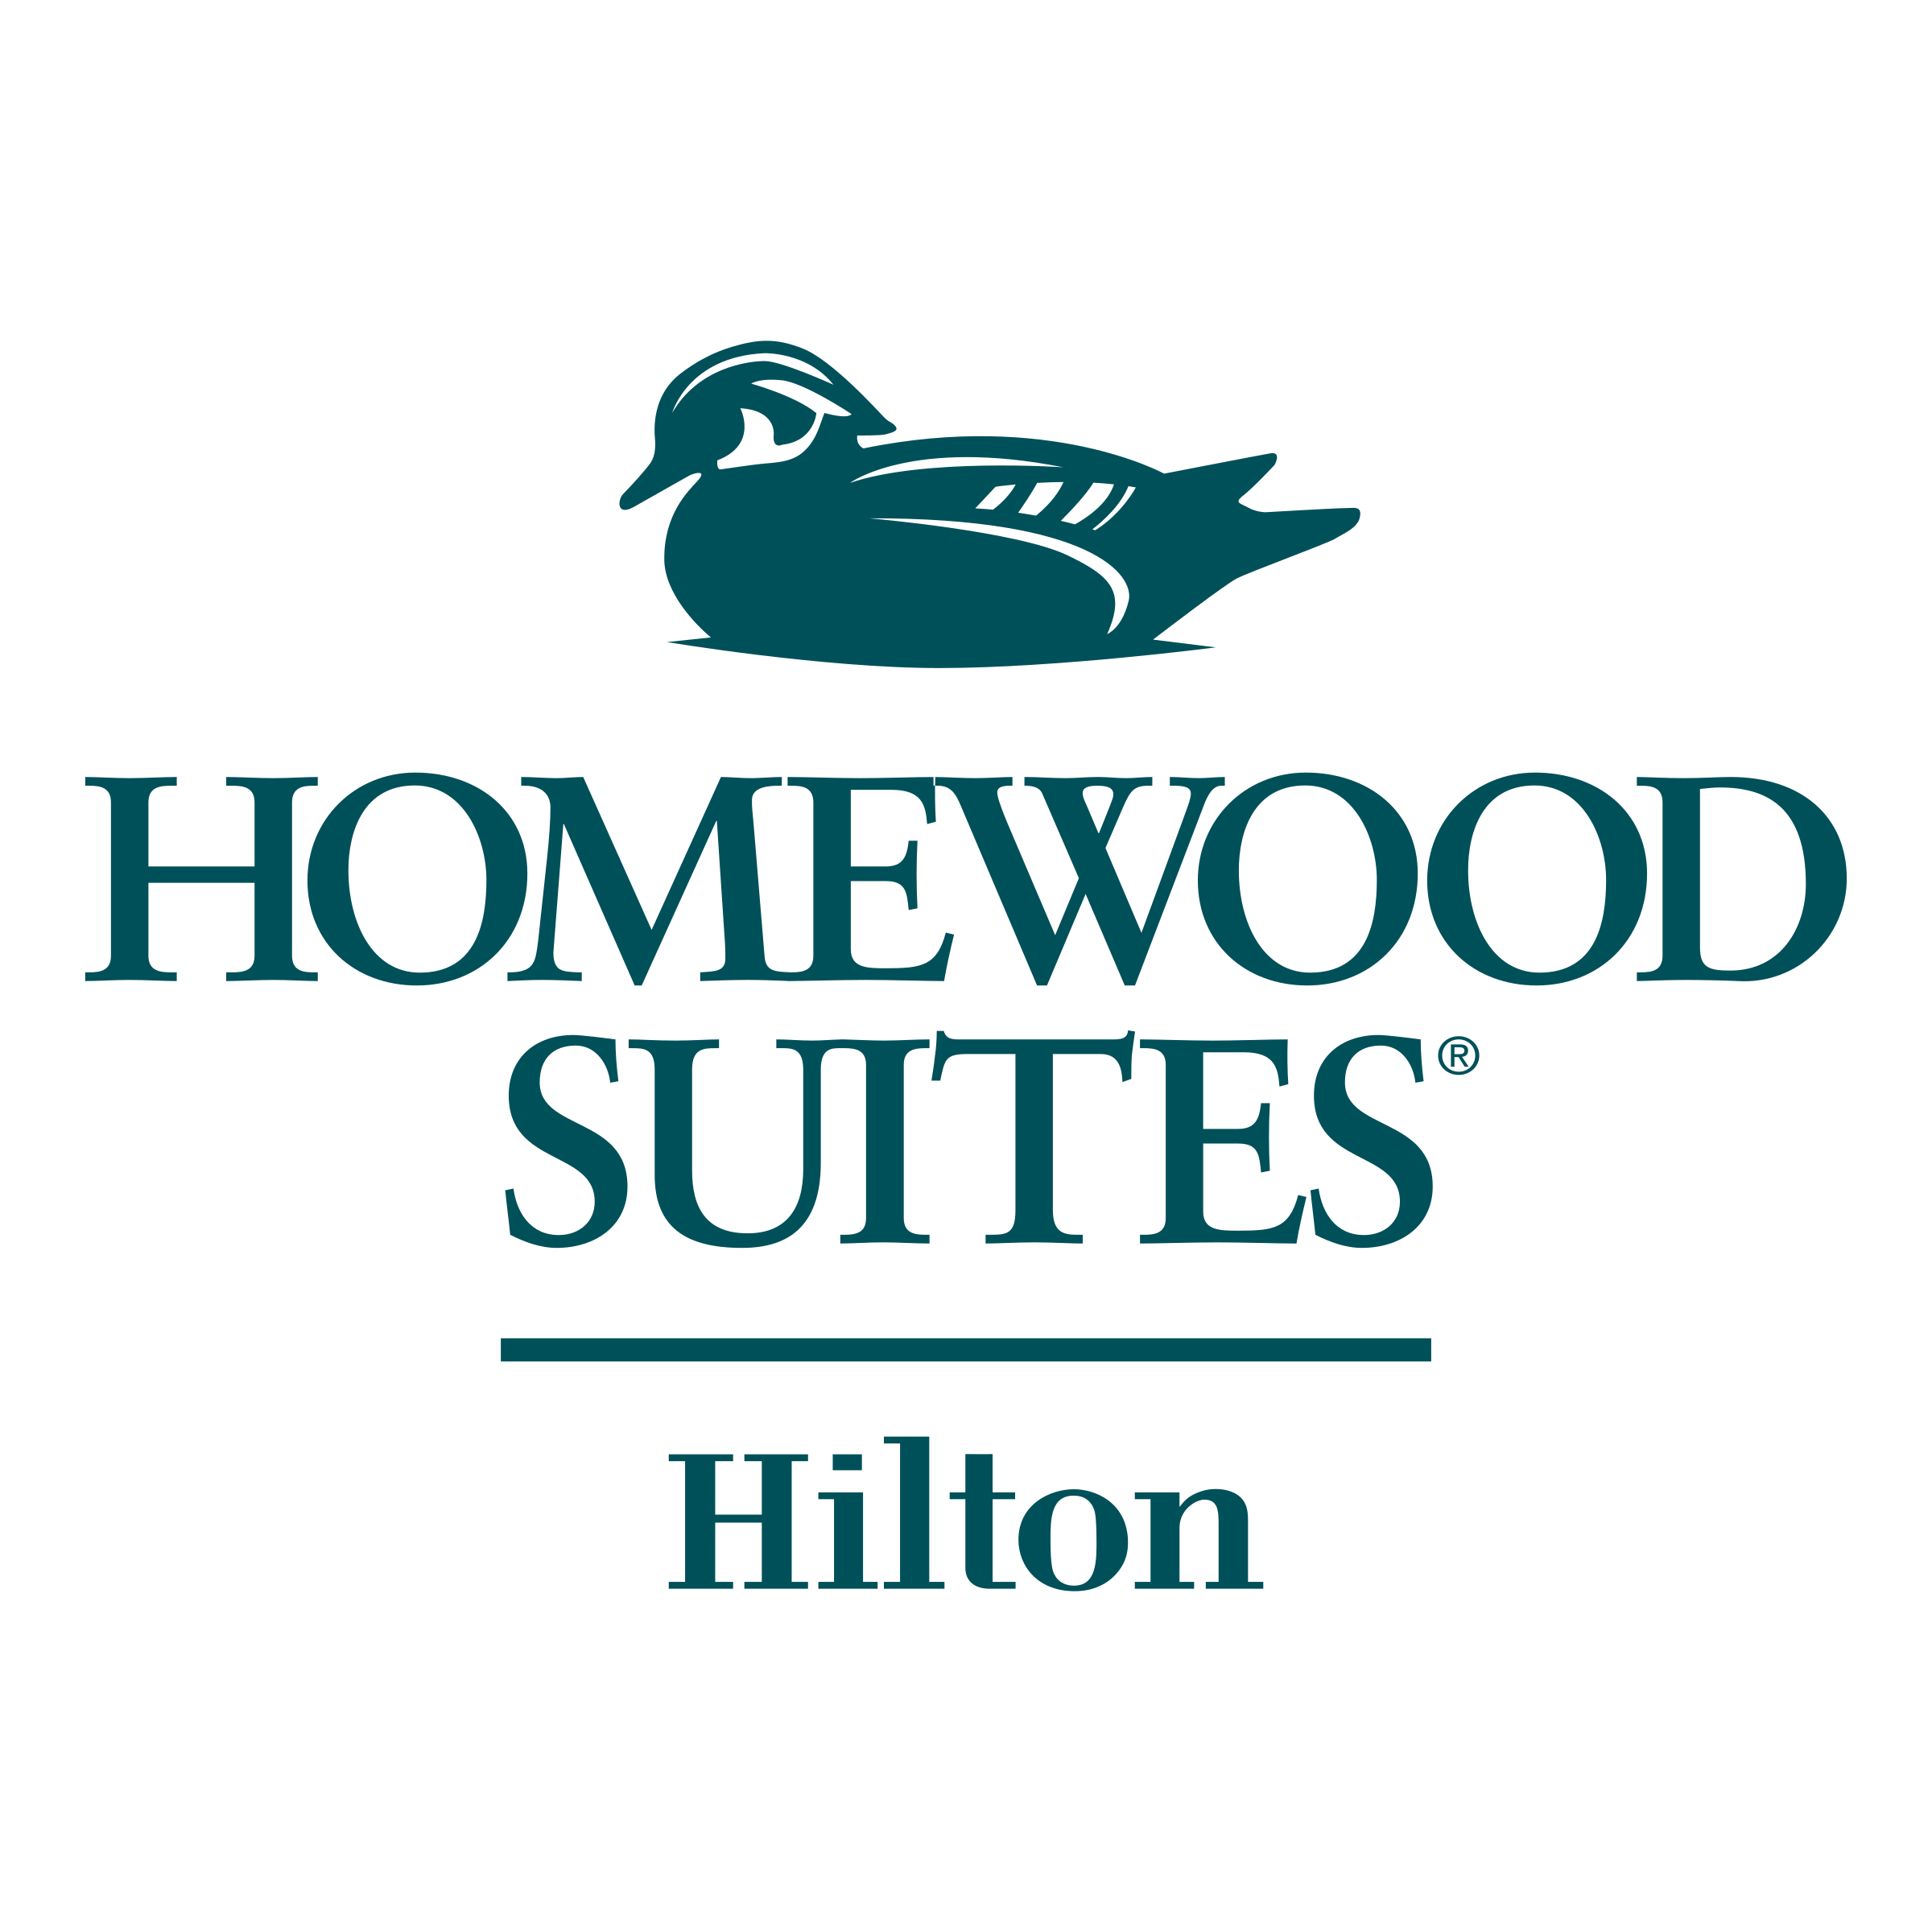 Homewood Logo - Homewood Suites Logo PNG Transparent & SVG Vector